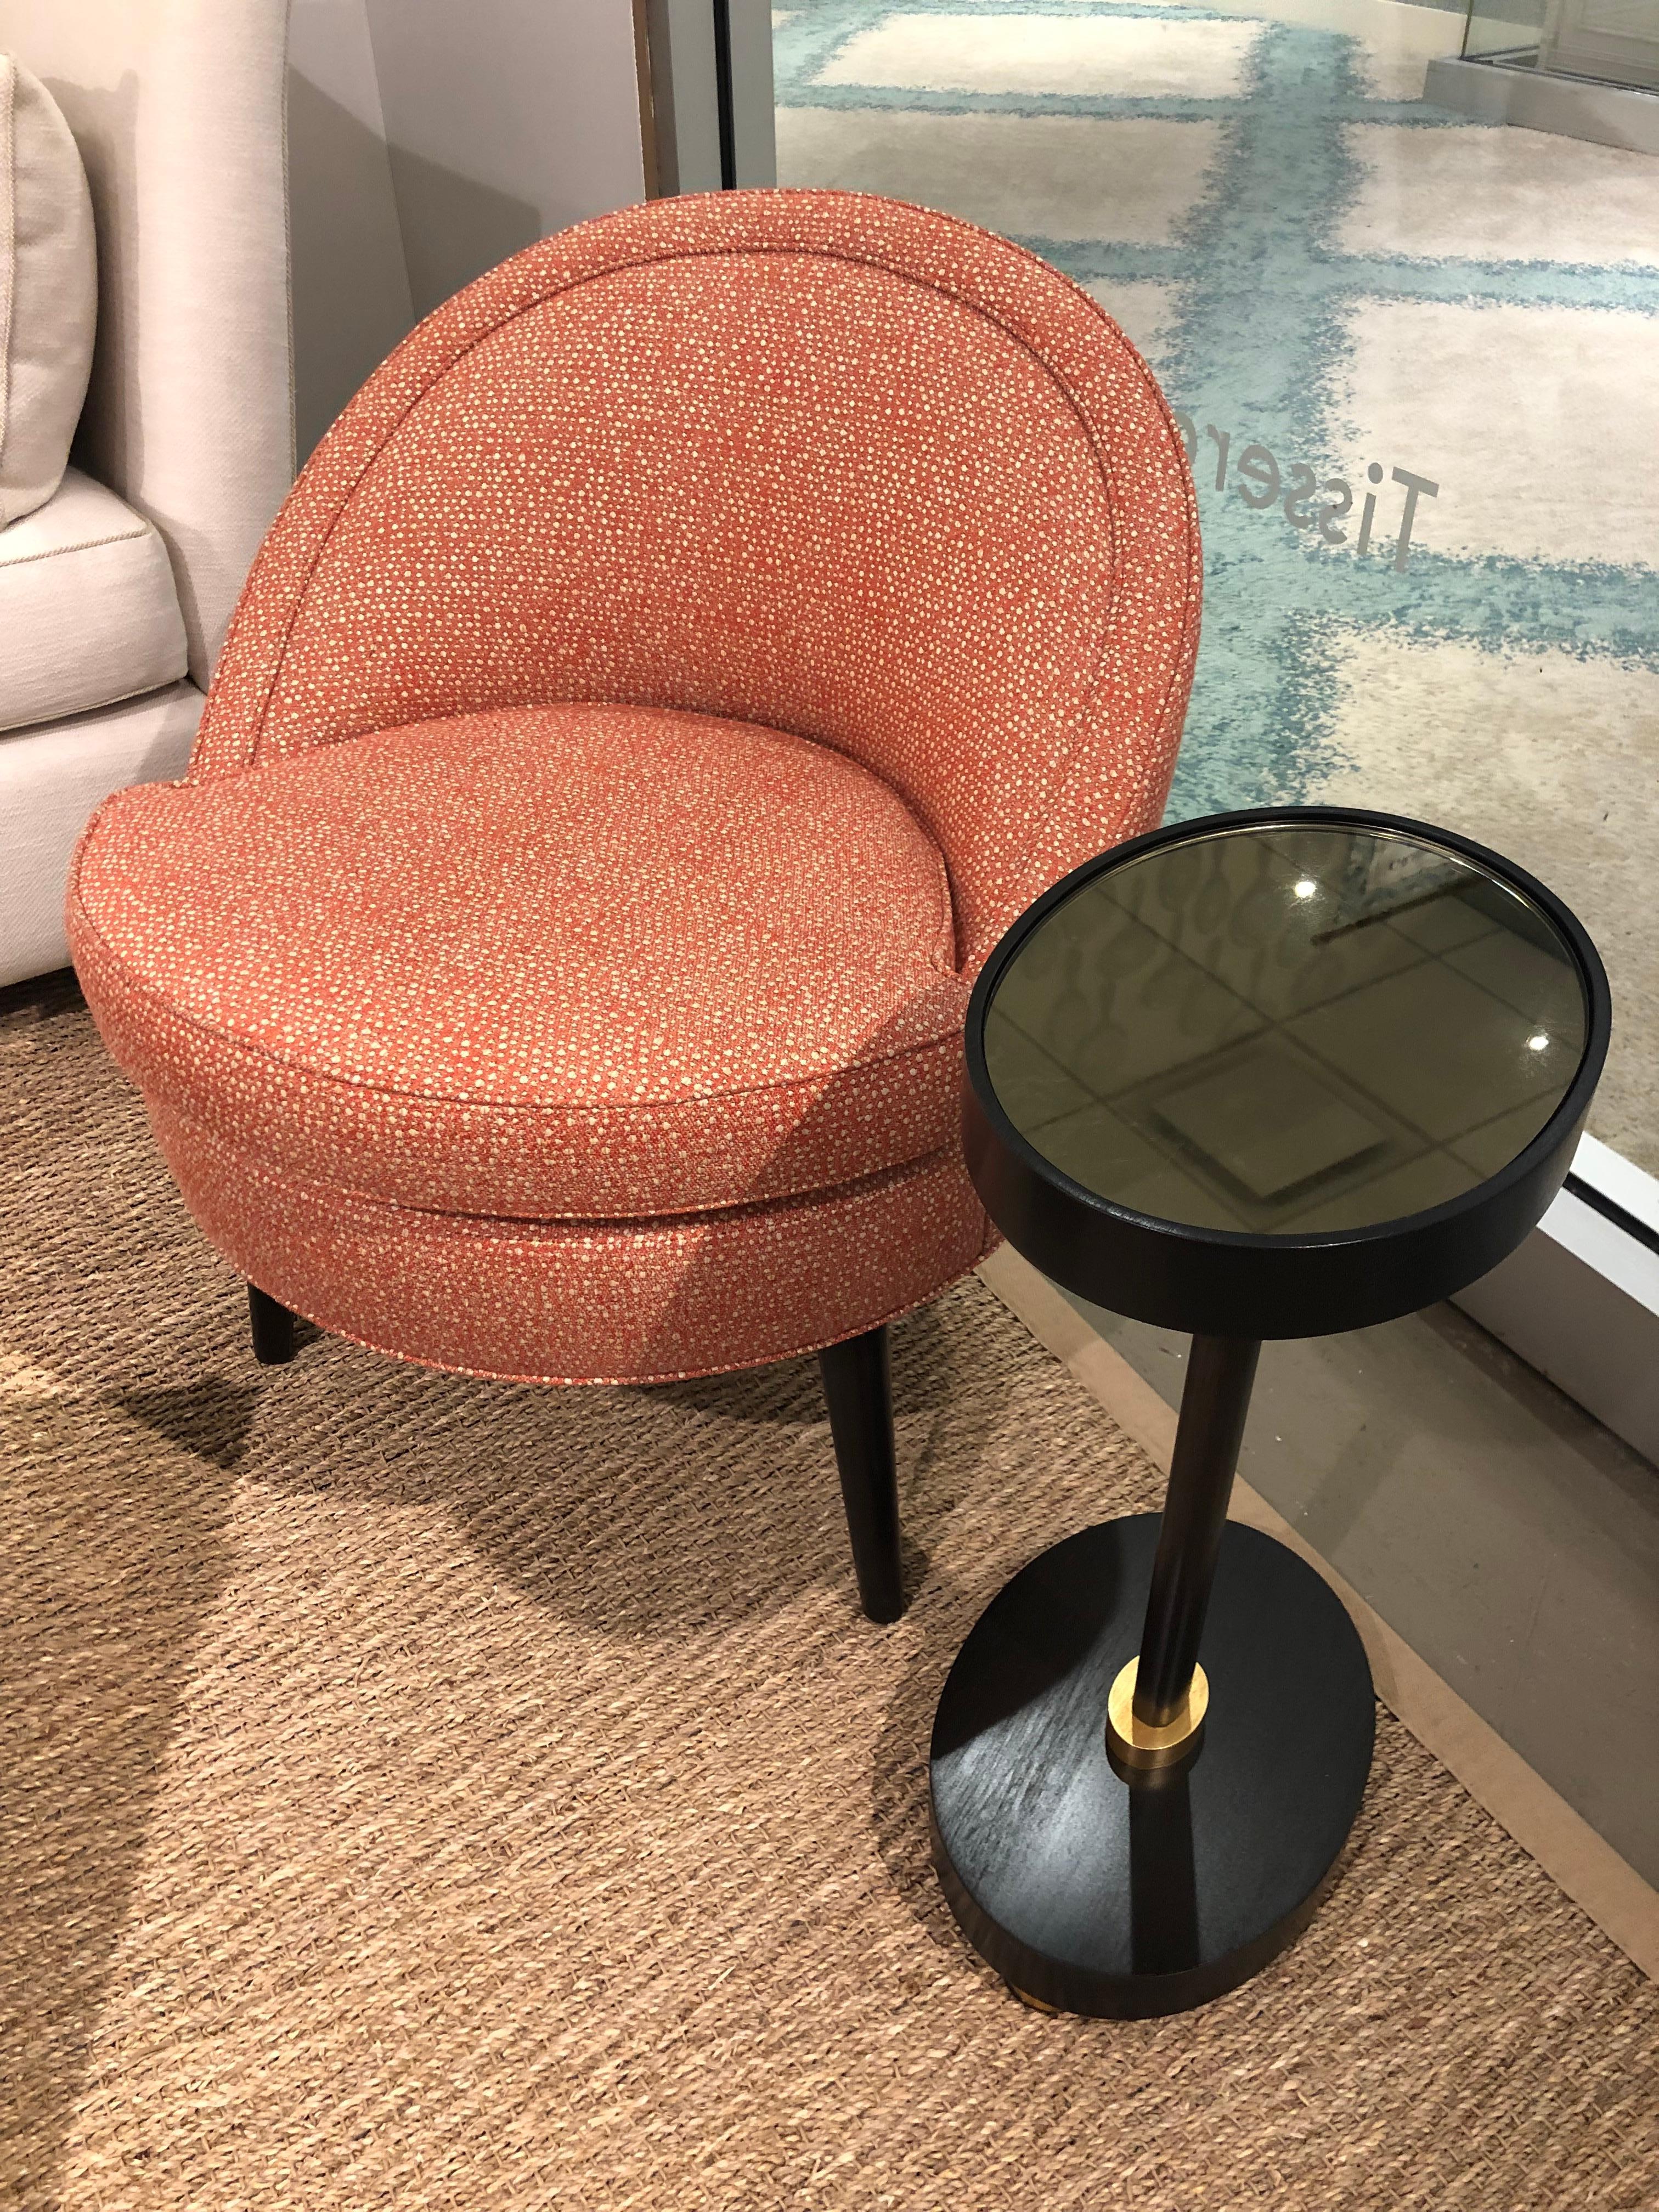 Monte Mini Chair In New Condition For Sale In Boston, MA